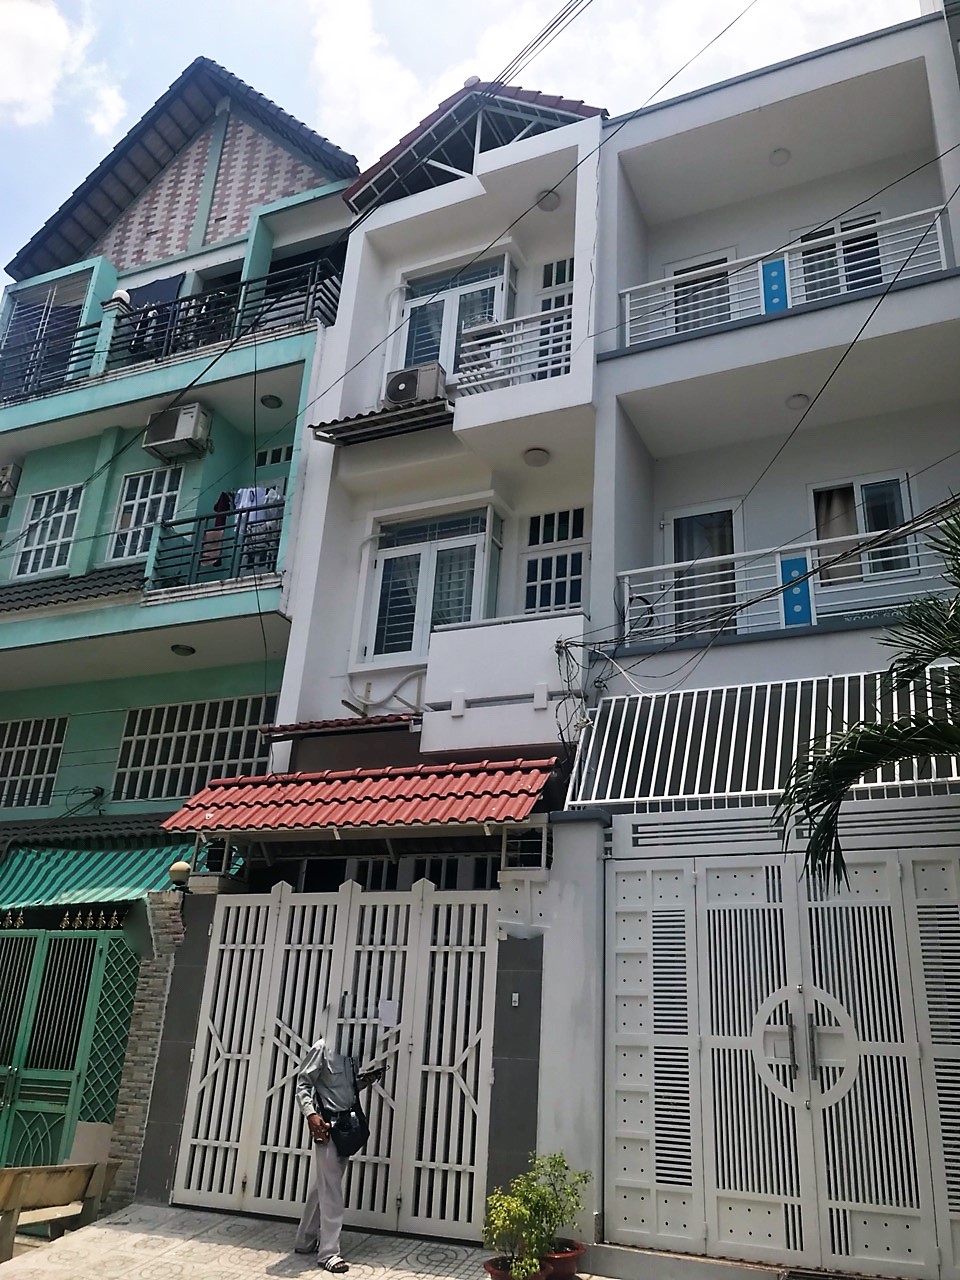 Bán nhà phố 2 lầu mặt tiền đường Số 51, Phường Tân Quy, Quận 7